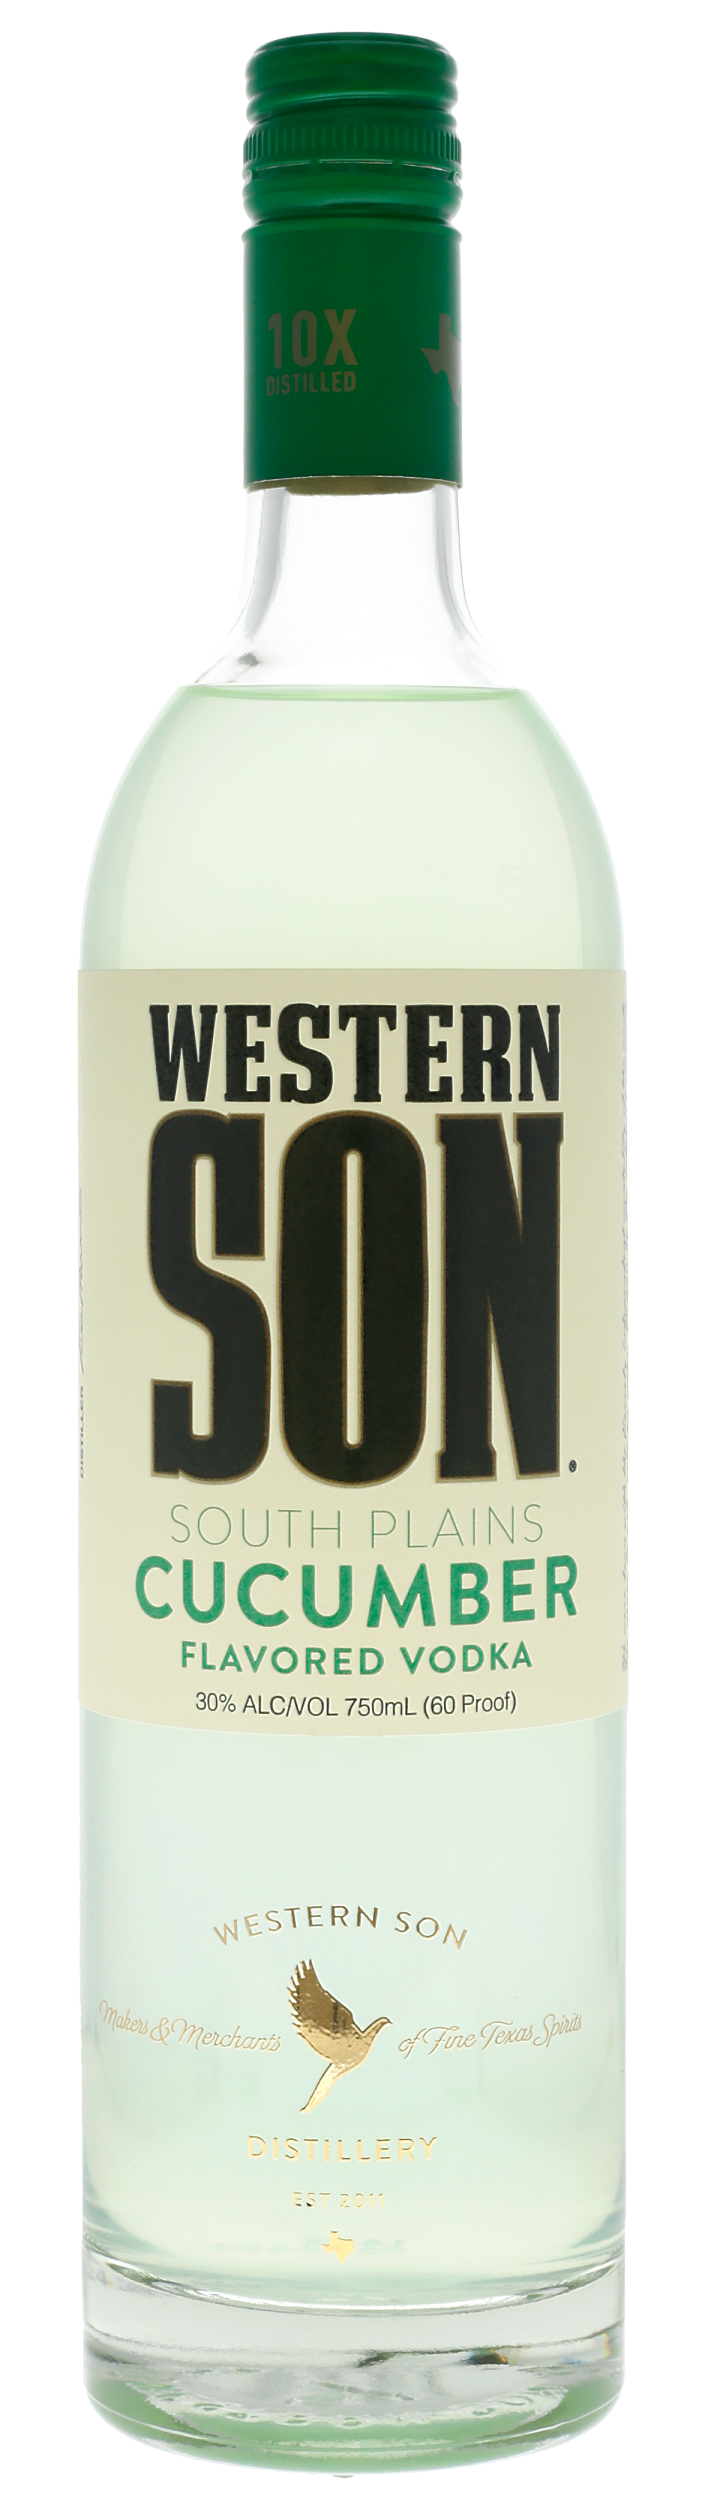 Western Son Cucumber Flavored Vodka